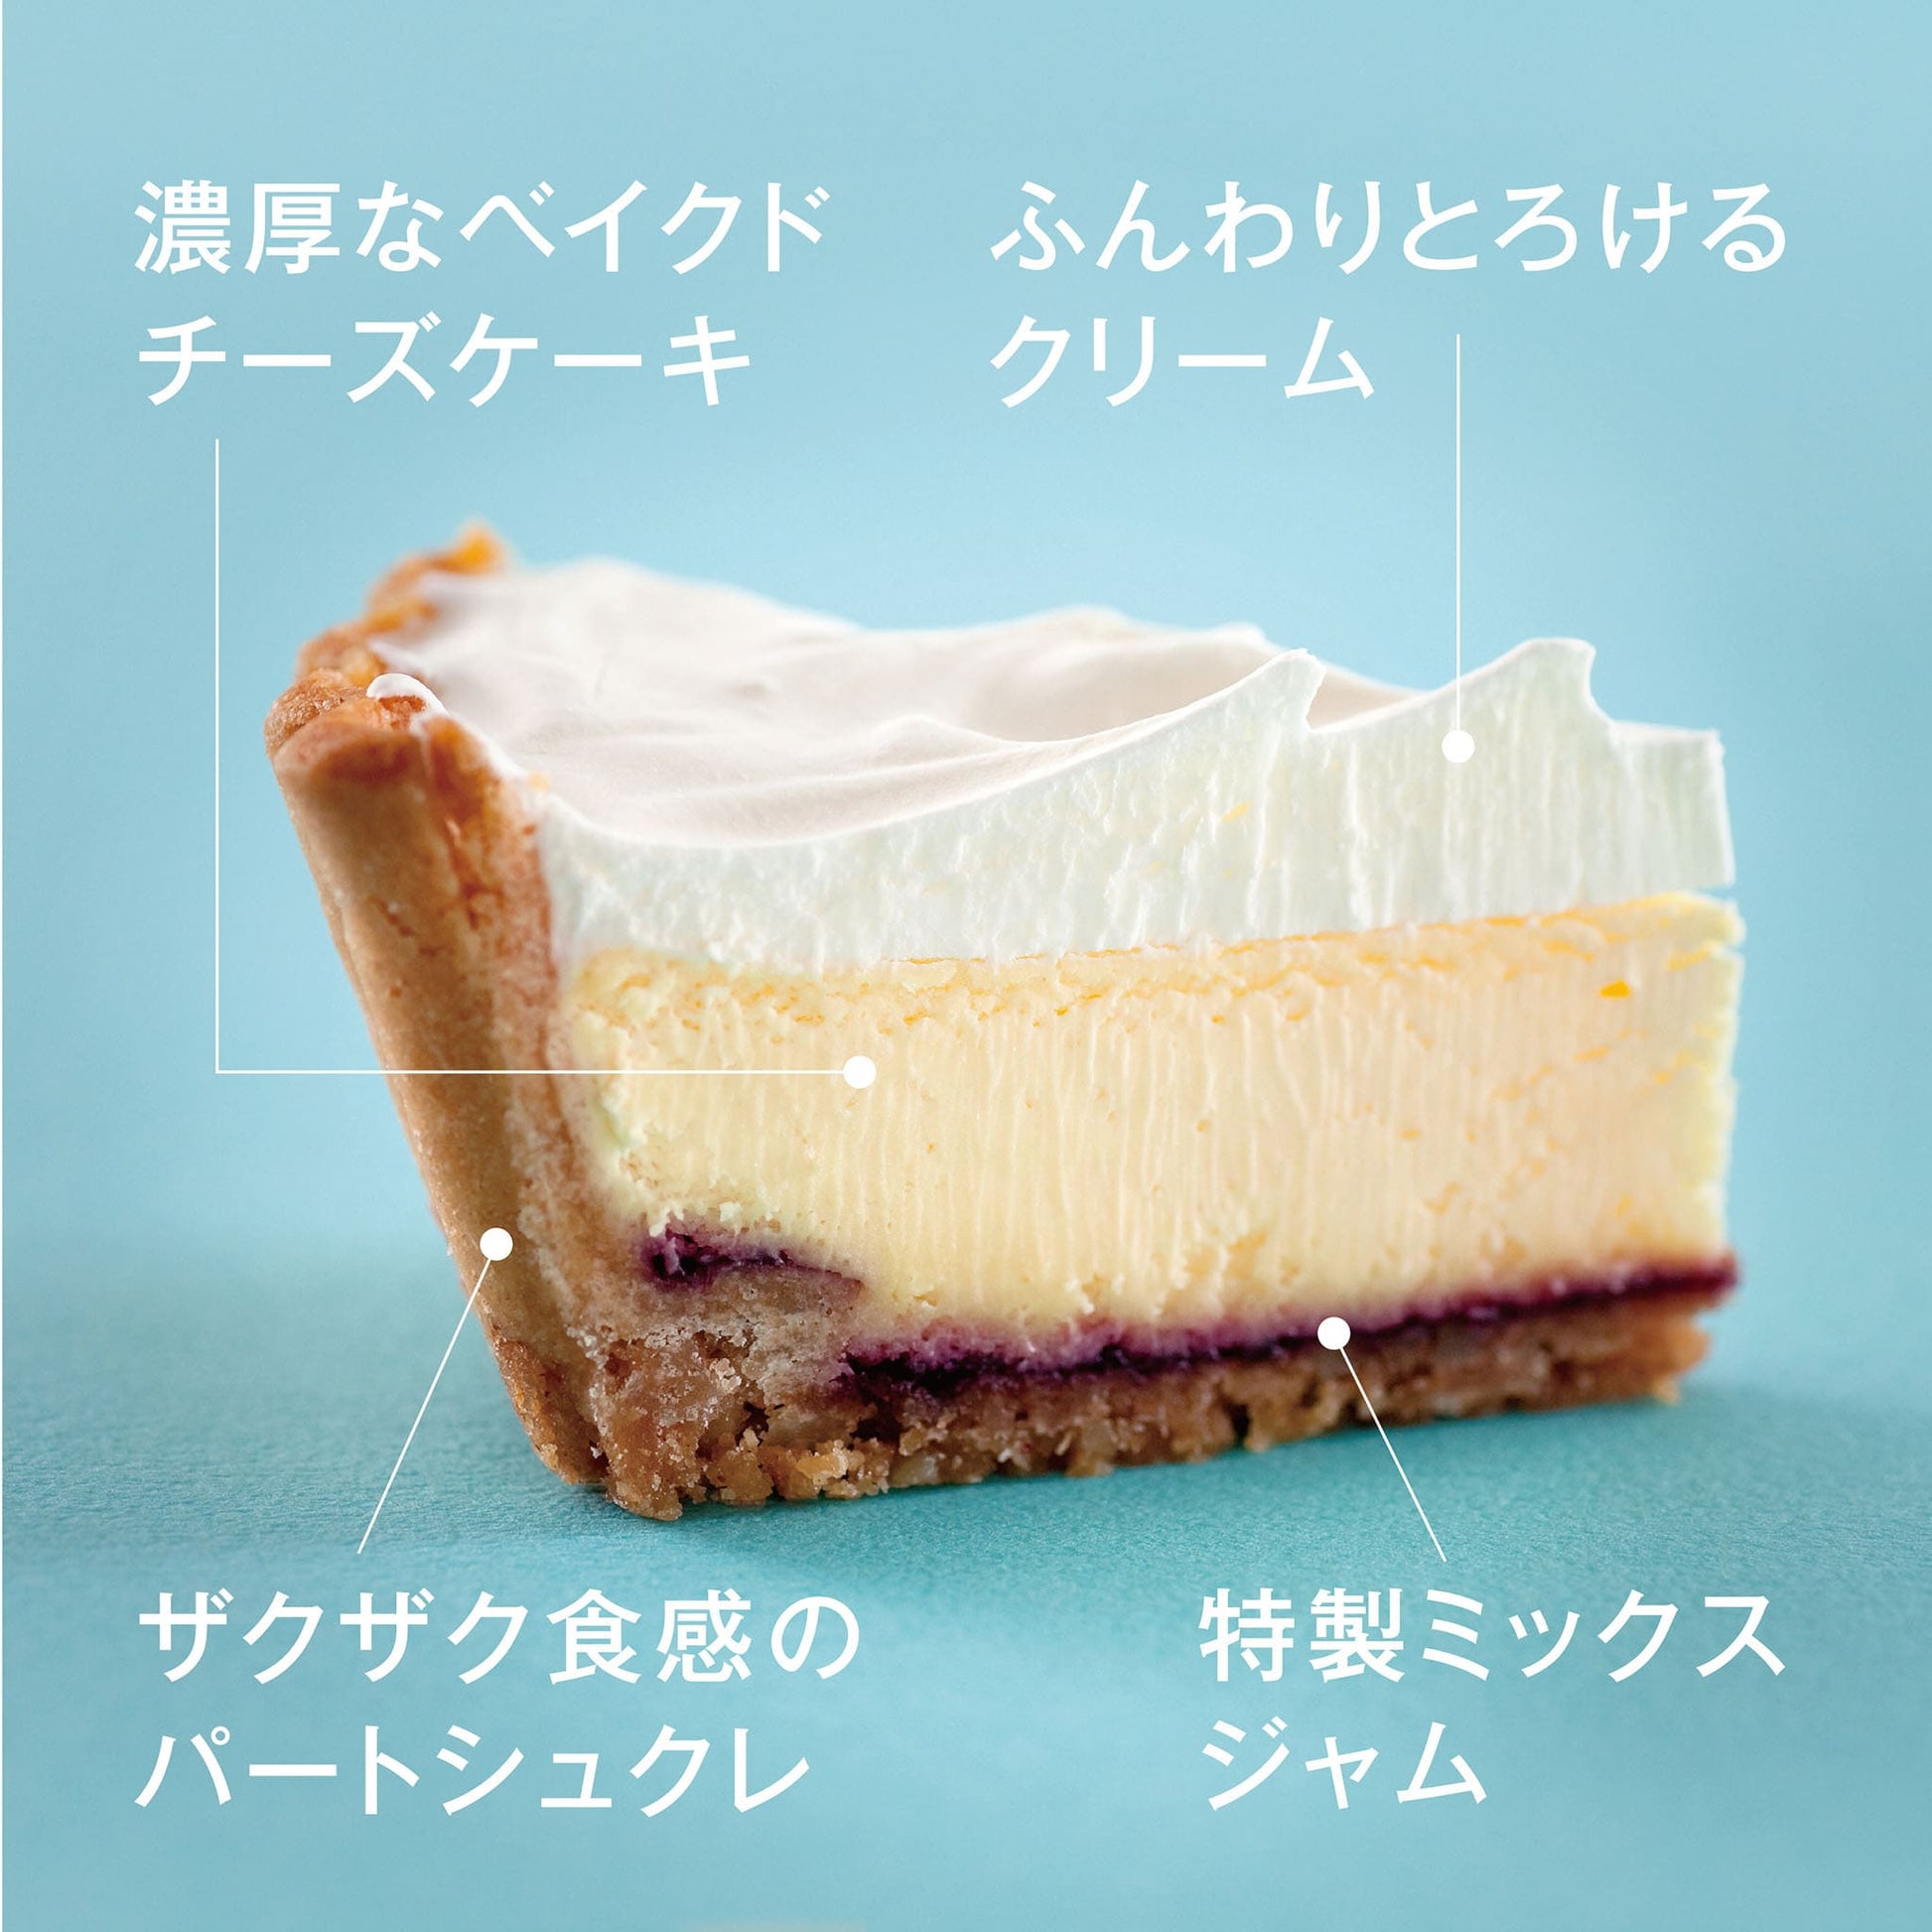 ふらの雪どけチーズケーキ 2種食べ比べセット《プレミアムショコラ》 - もりもと オンラインショップ